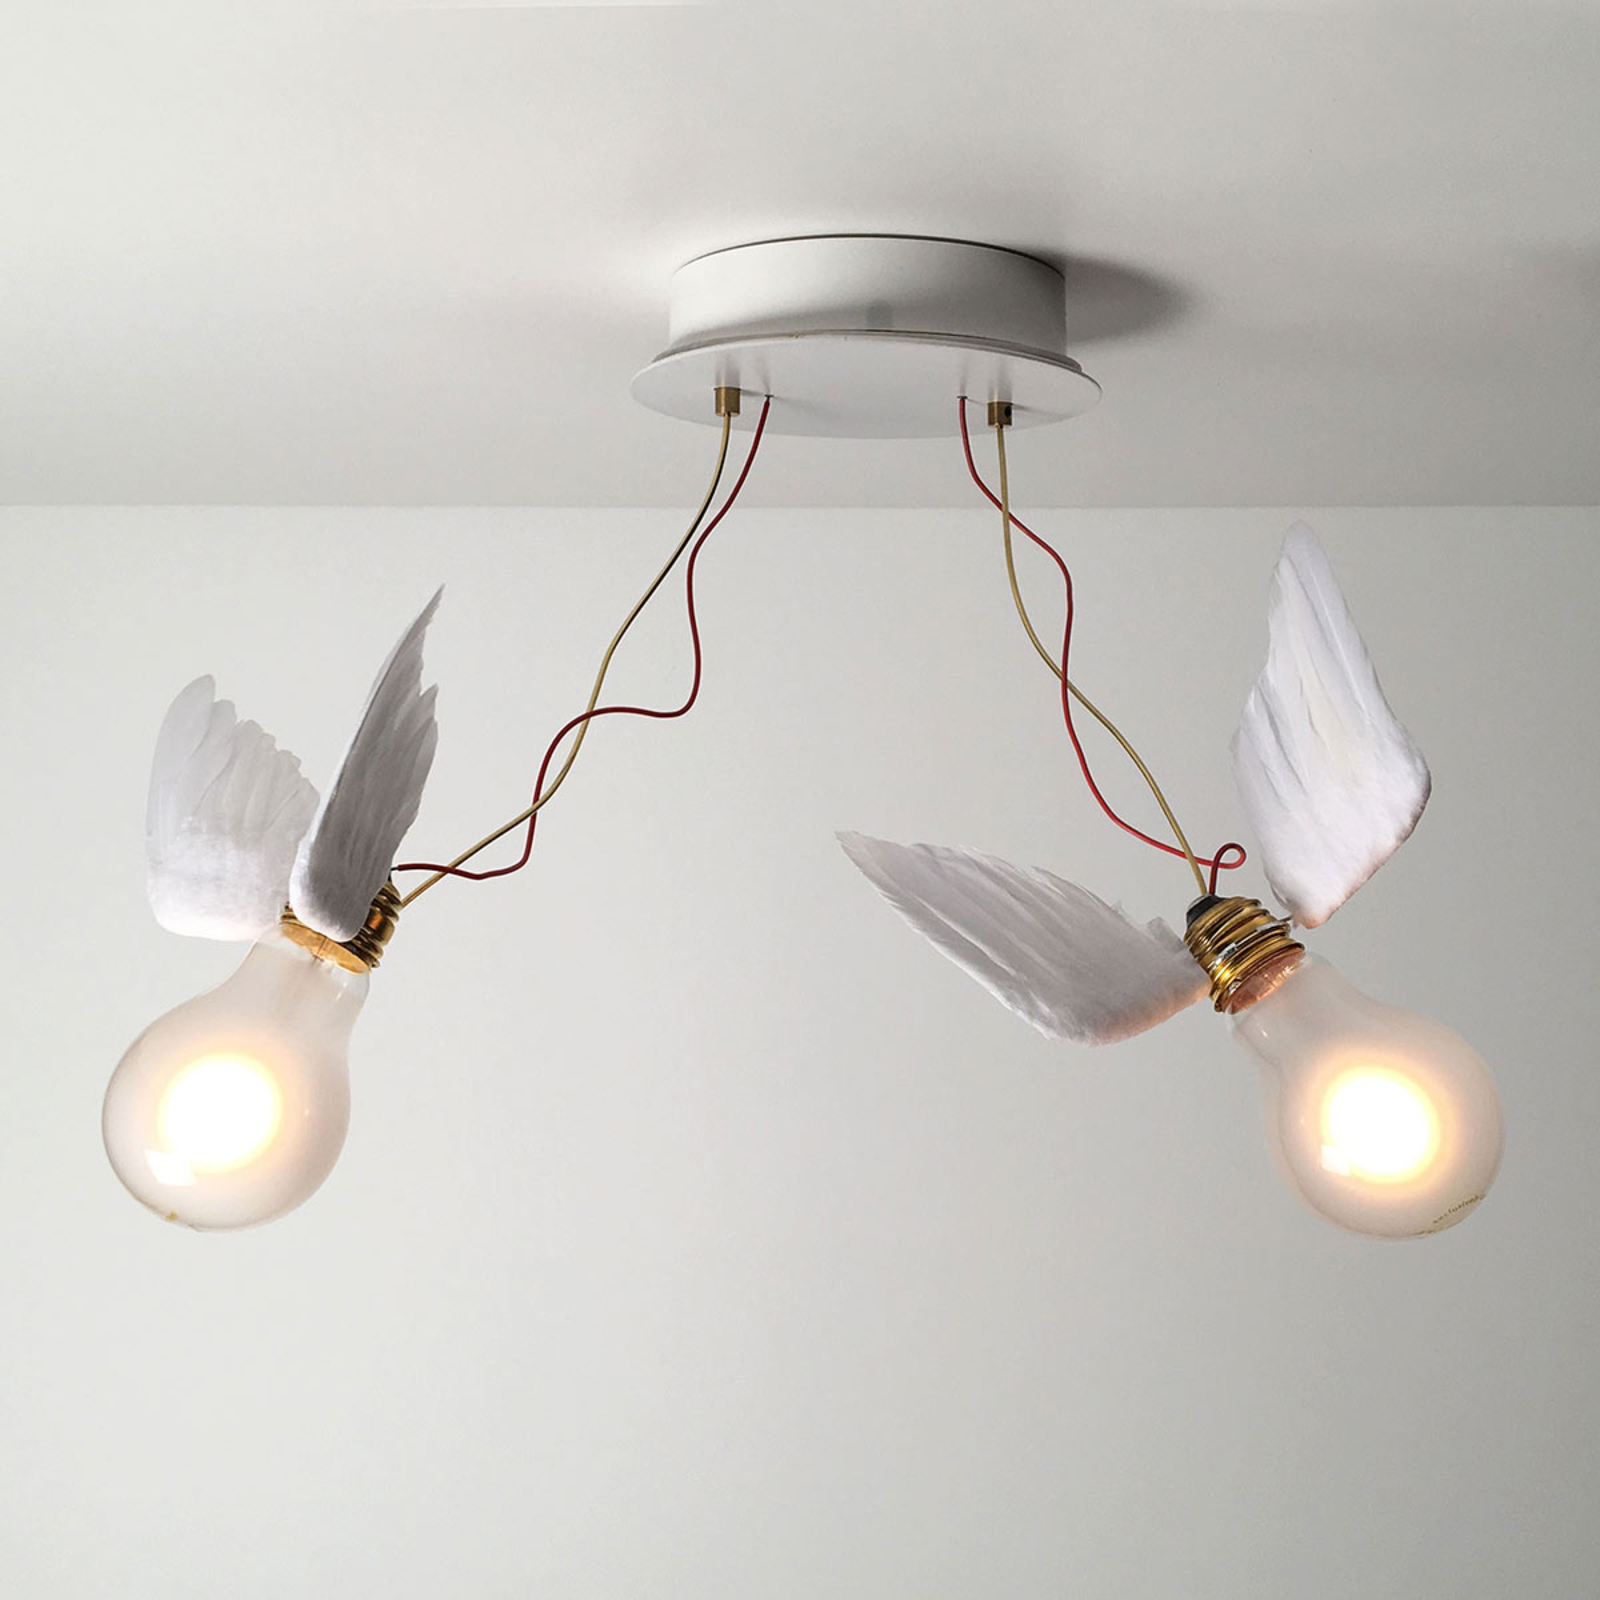 Ingo Maurer Lucellino Doppio ceiling light 2-bulb